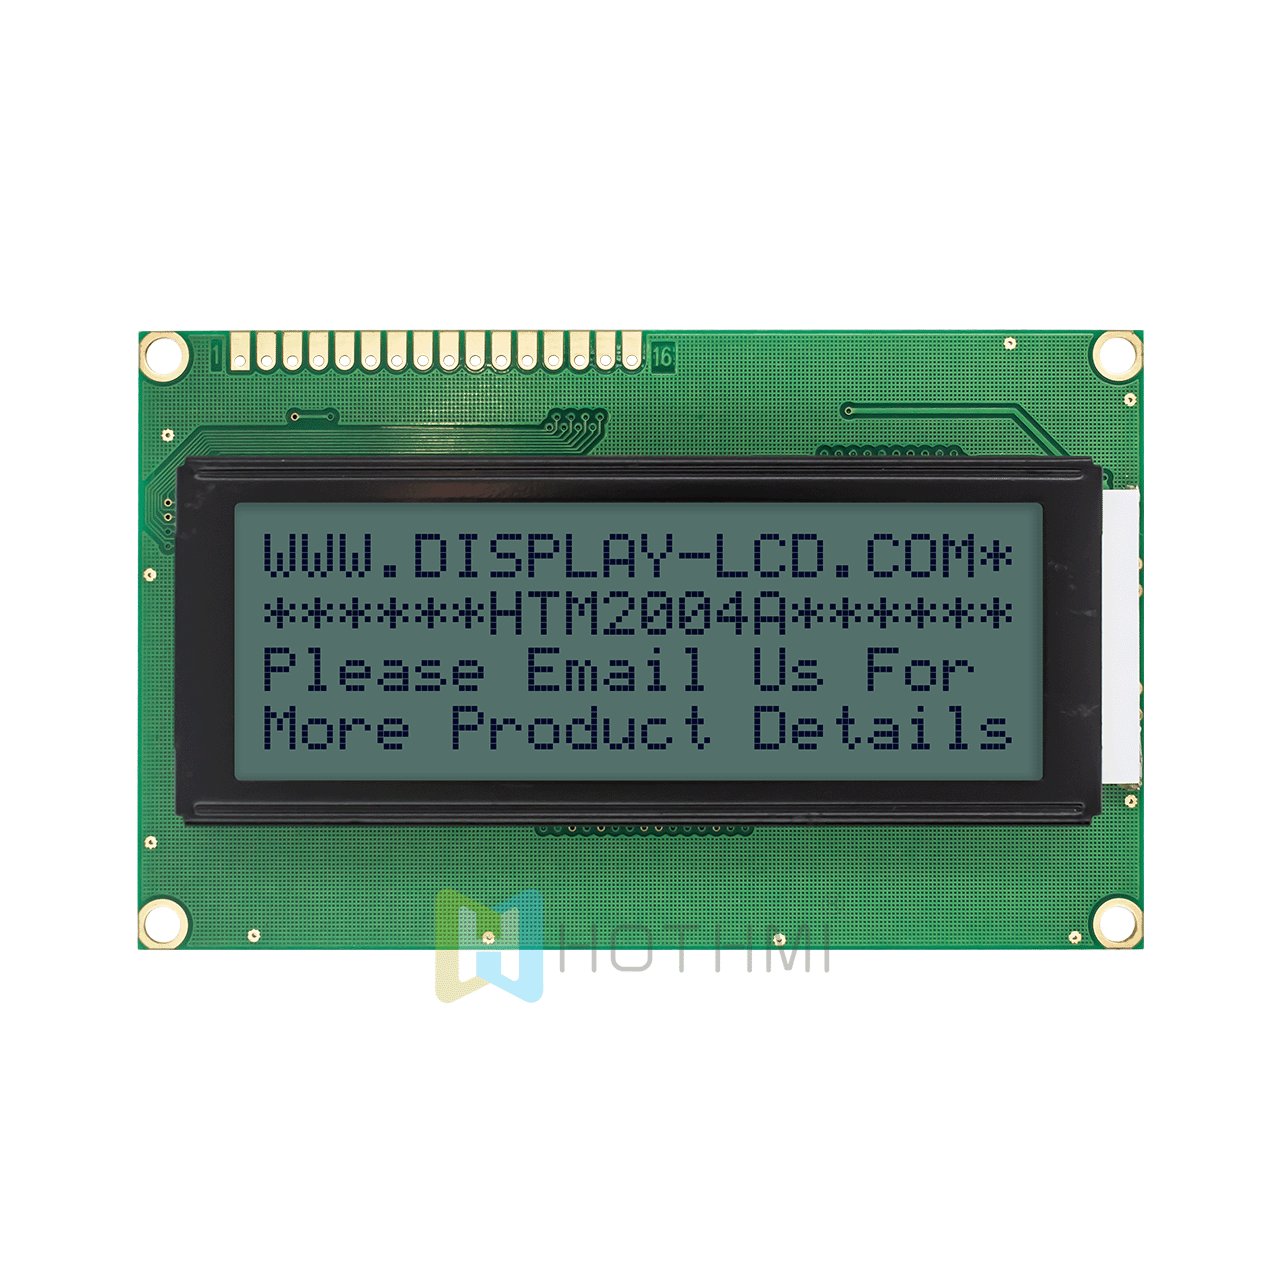  20x4 | 单色字符液晶显示屏| STN + | 带黄绿侧背光 | Arduino显示屏 | 半透反射式 | Adruino  | ST7066U | 3.3v/5.0v